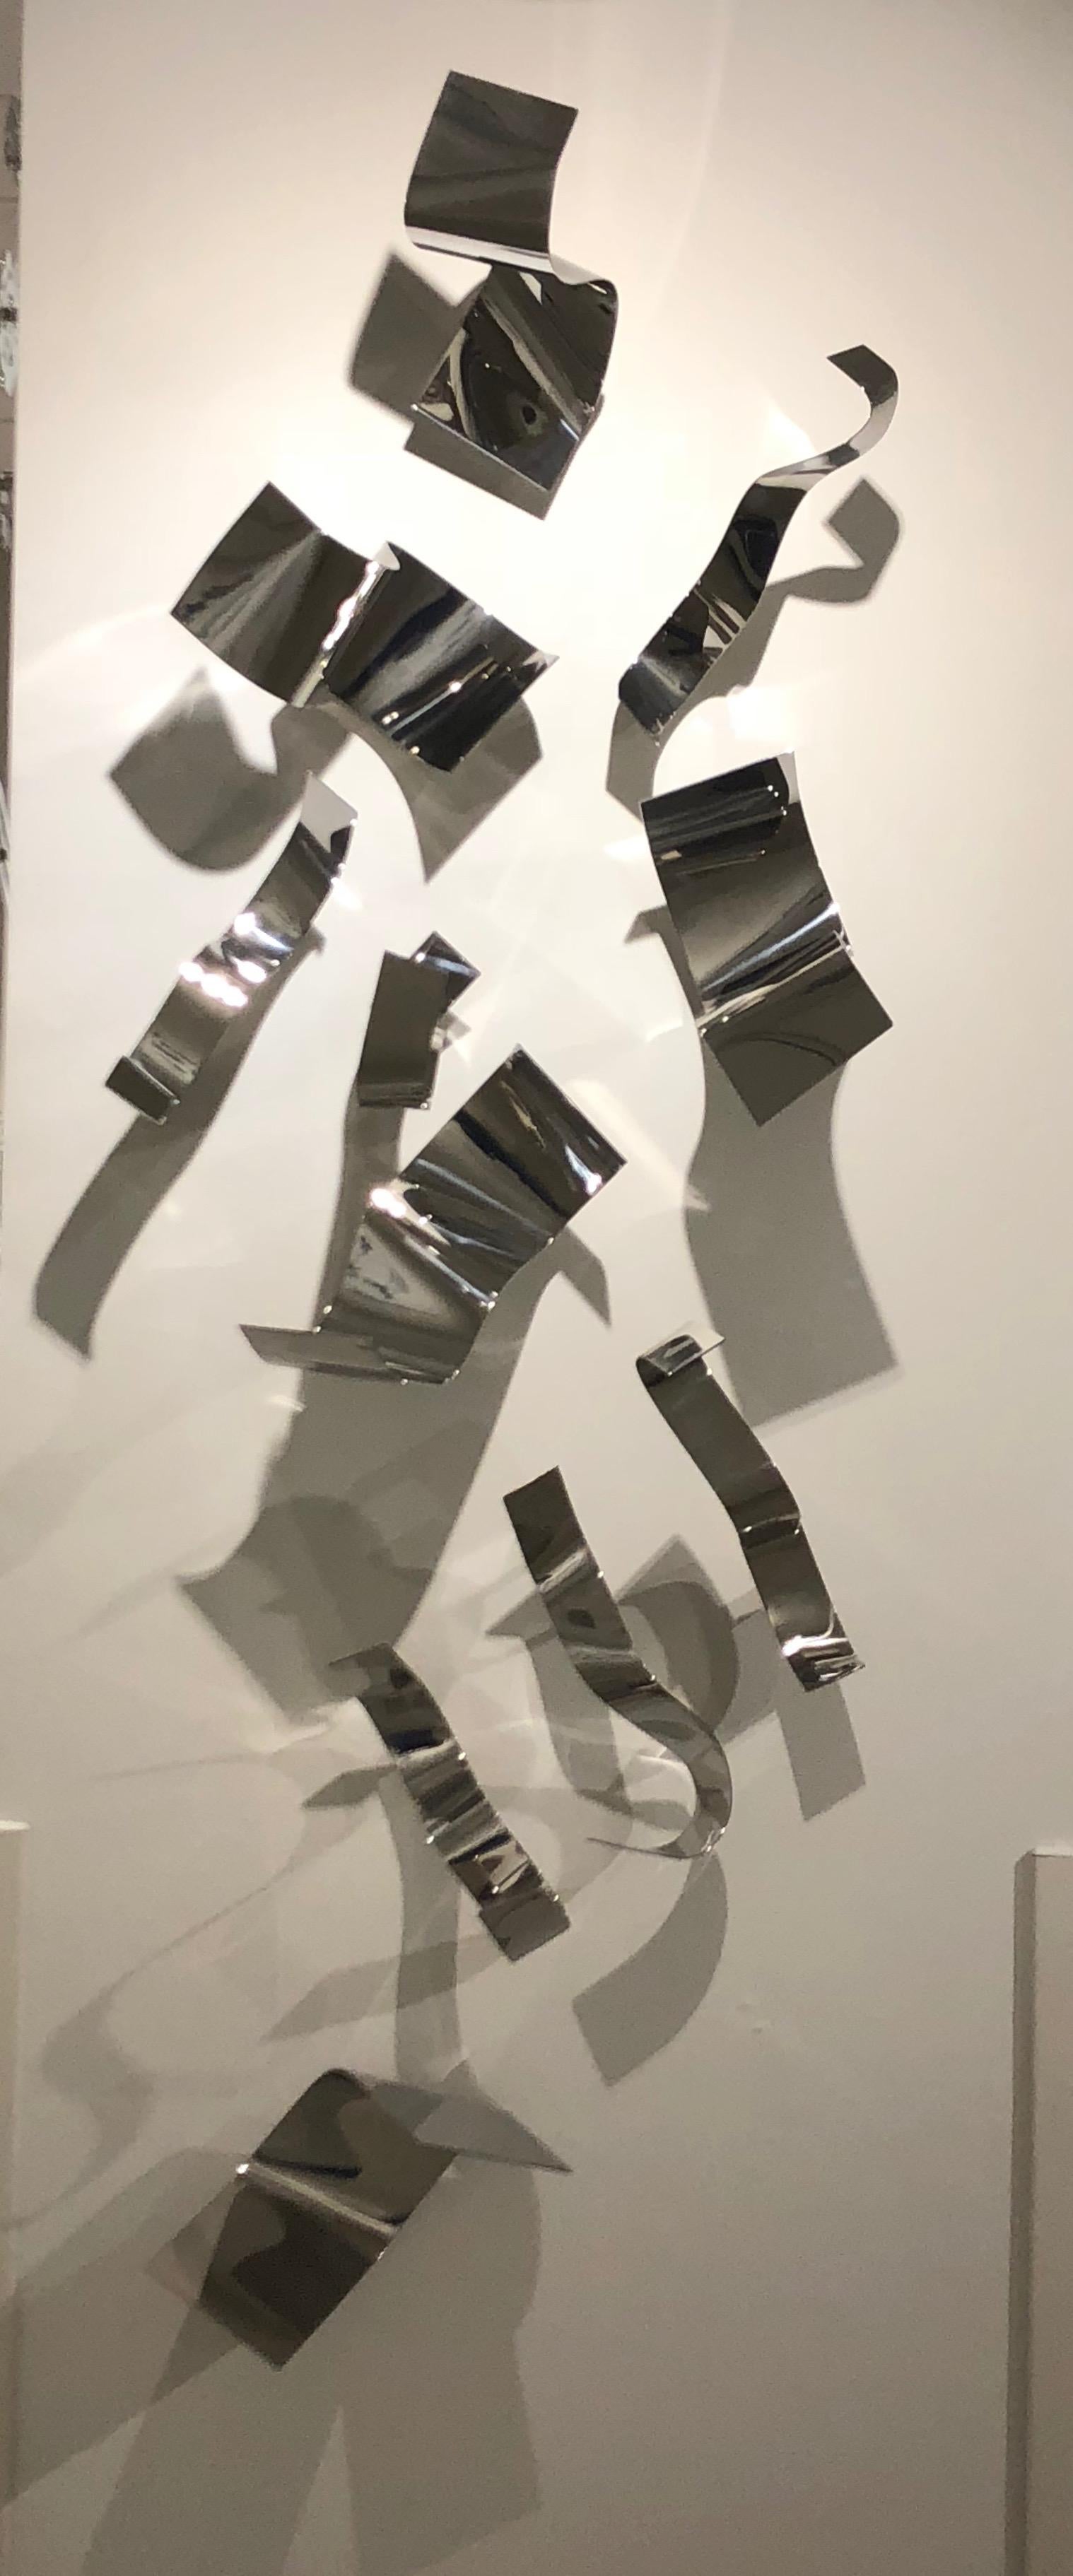 Abstract Sculpture Zammy Migdal - Eleven Minors and You éléments en métal chromé poli Zammy  Migdal 2018